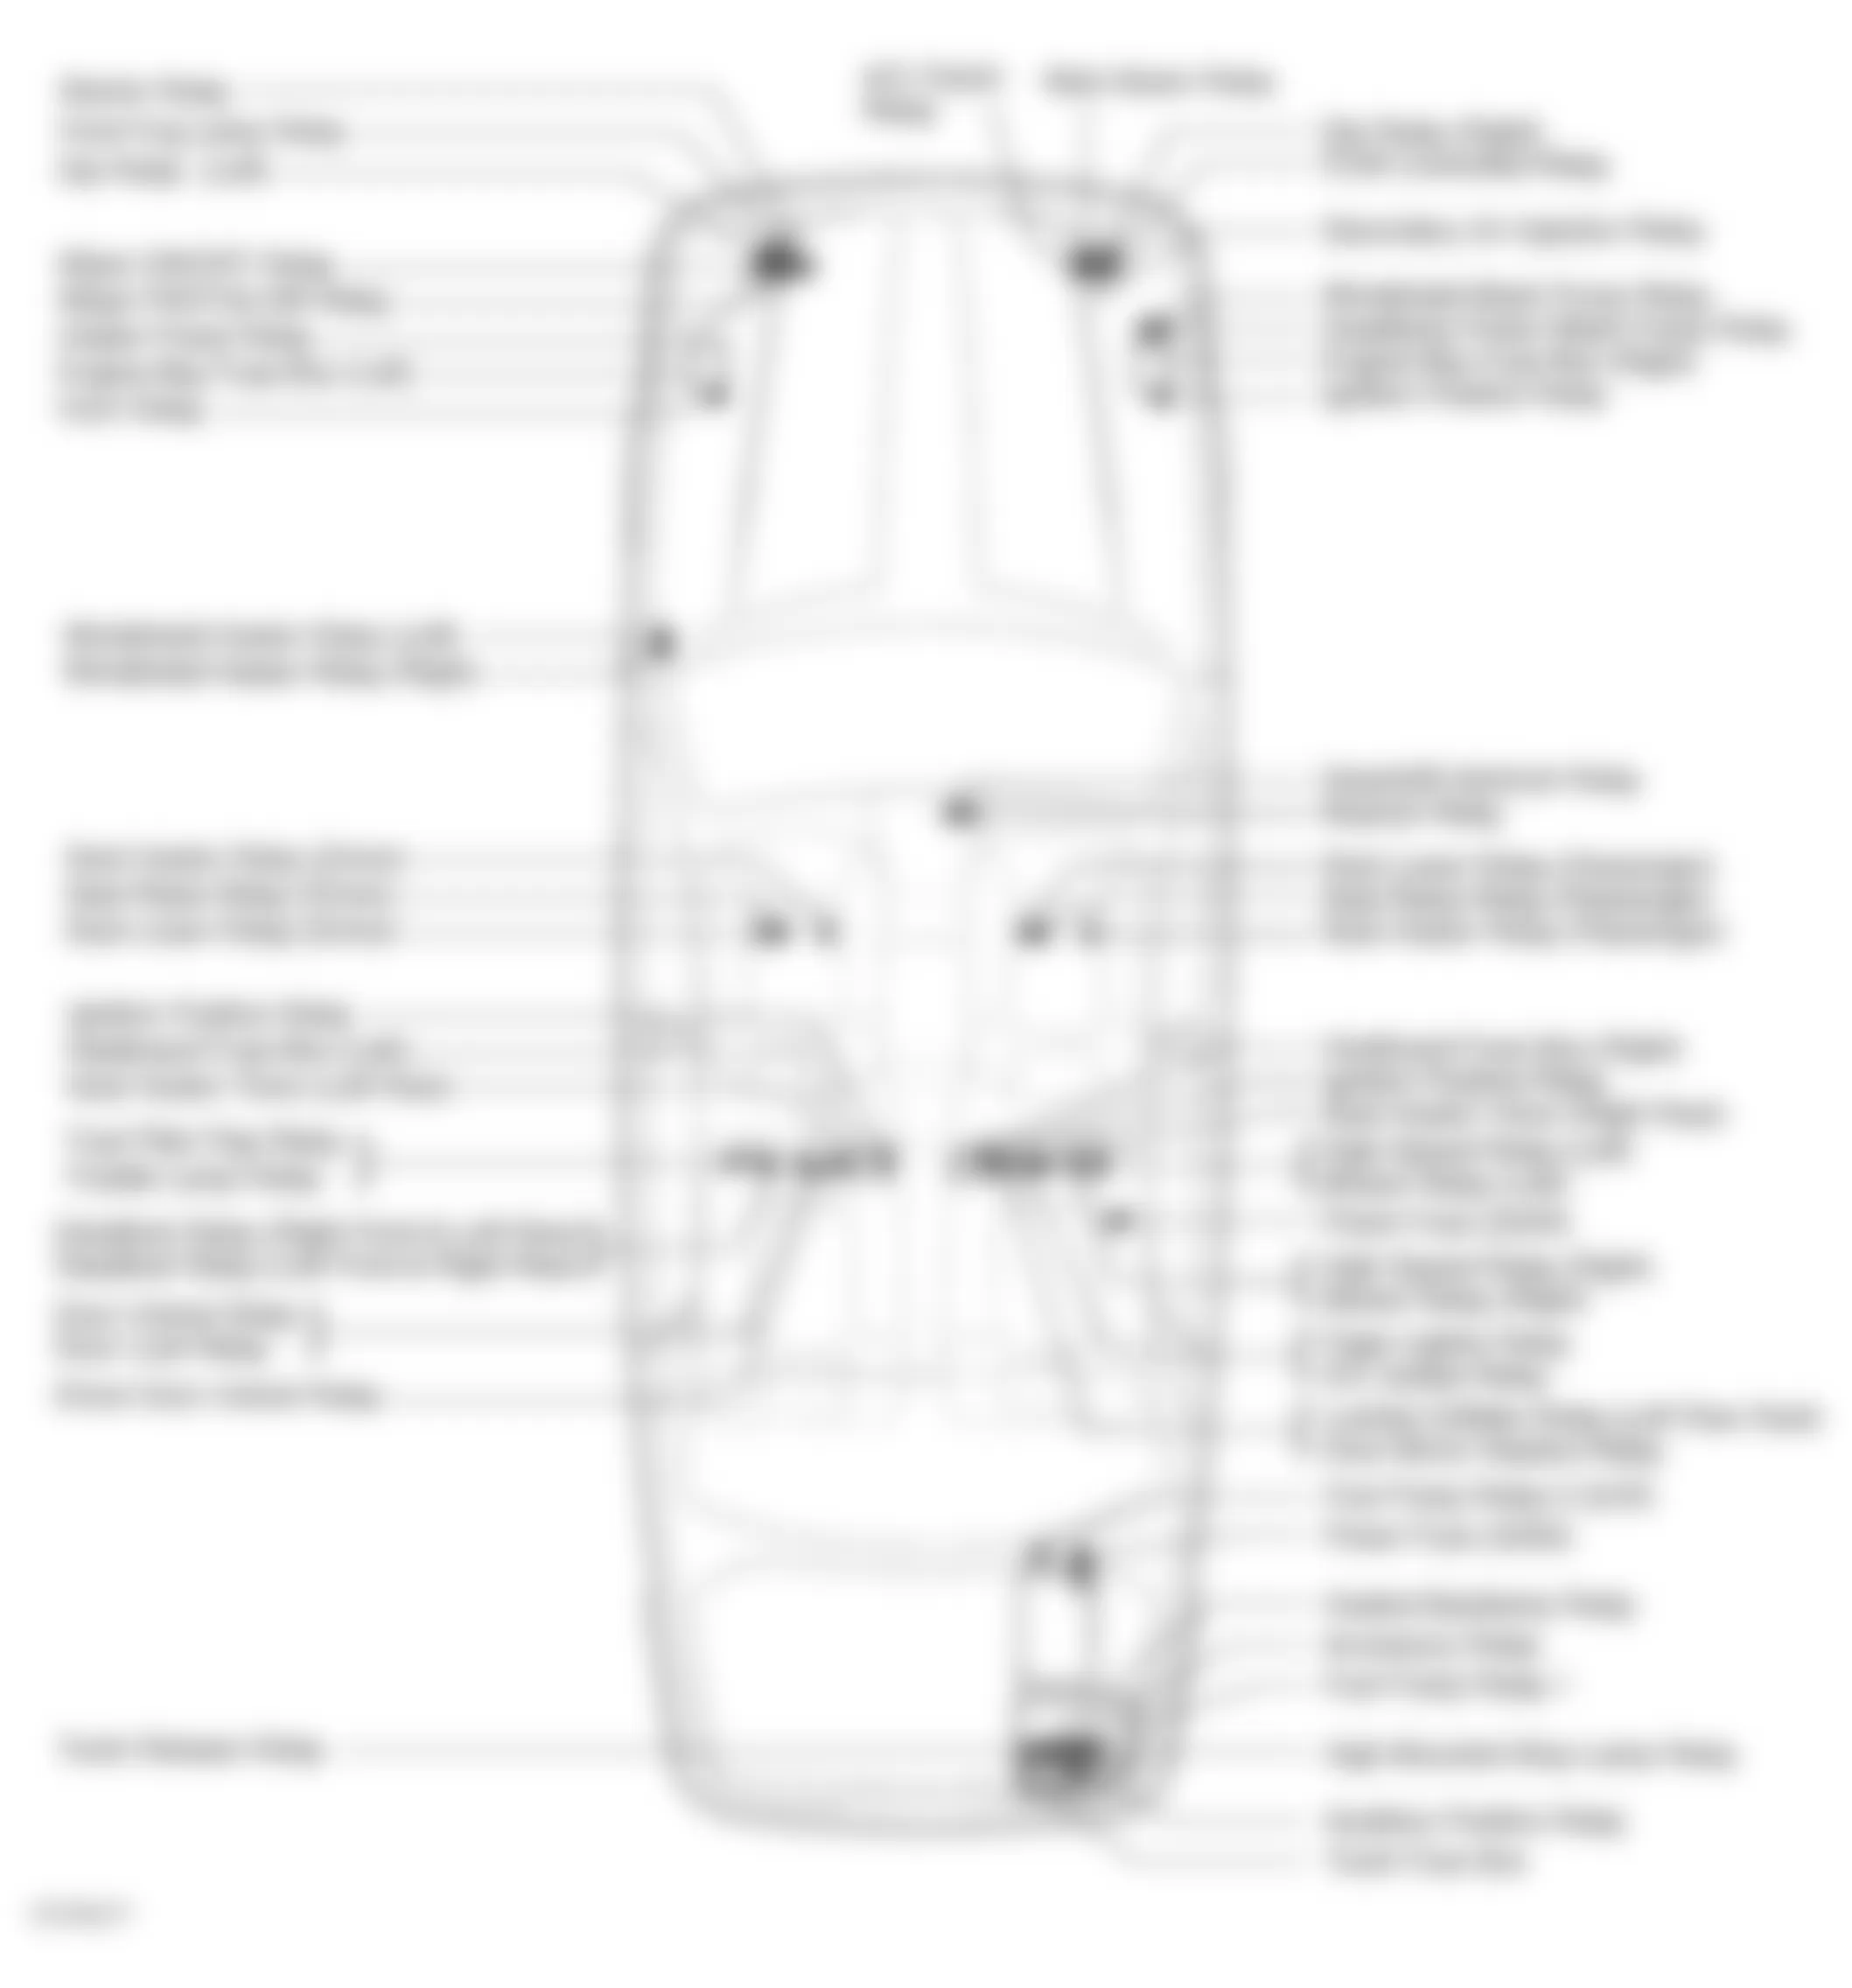 Jaguar XJ6 1997 - Component Locations -  Vehicle Overview